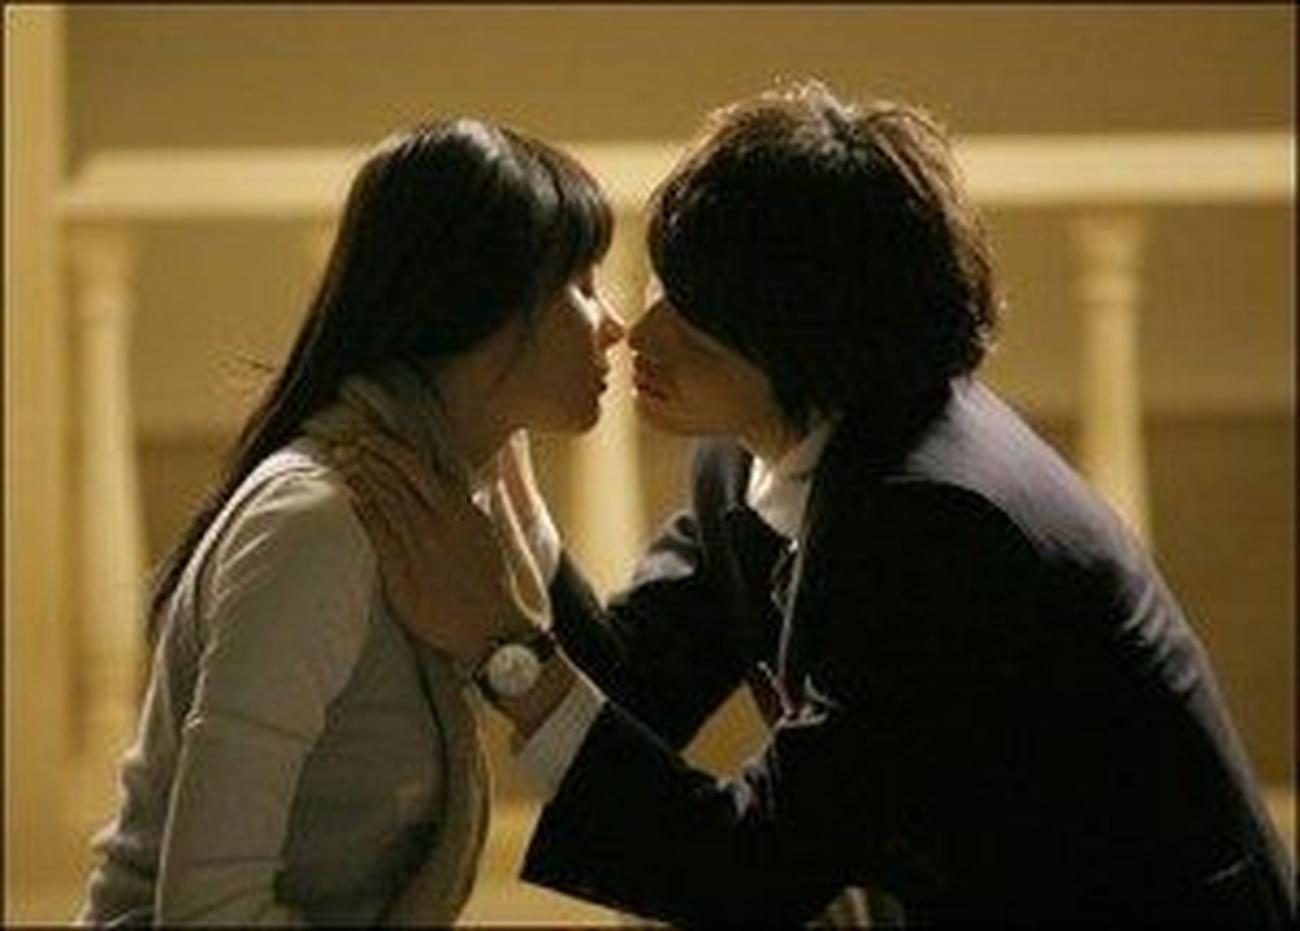 Photo of Baciare una ragazza. Ecco come desidera essere baciata.